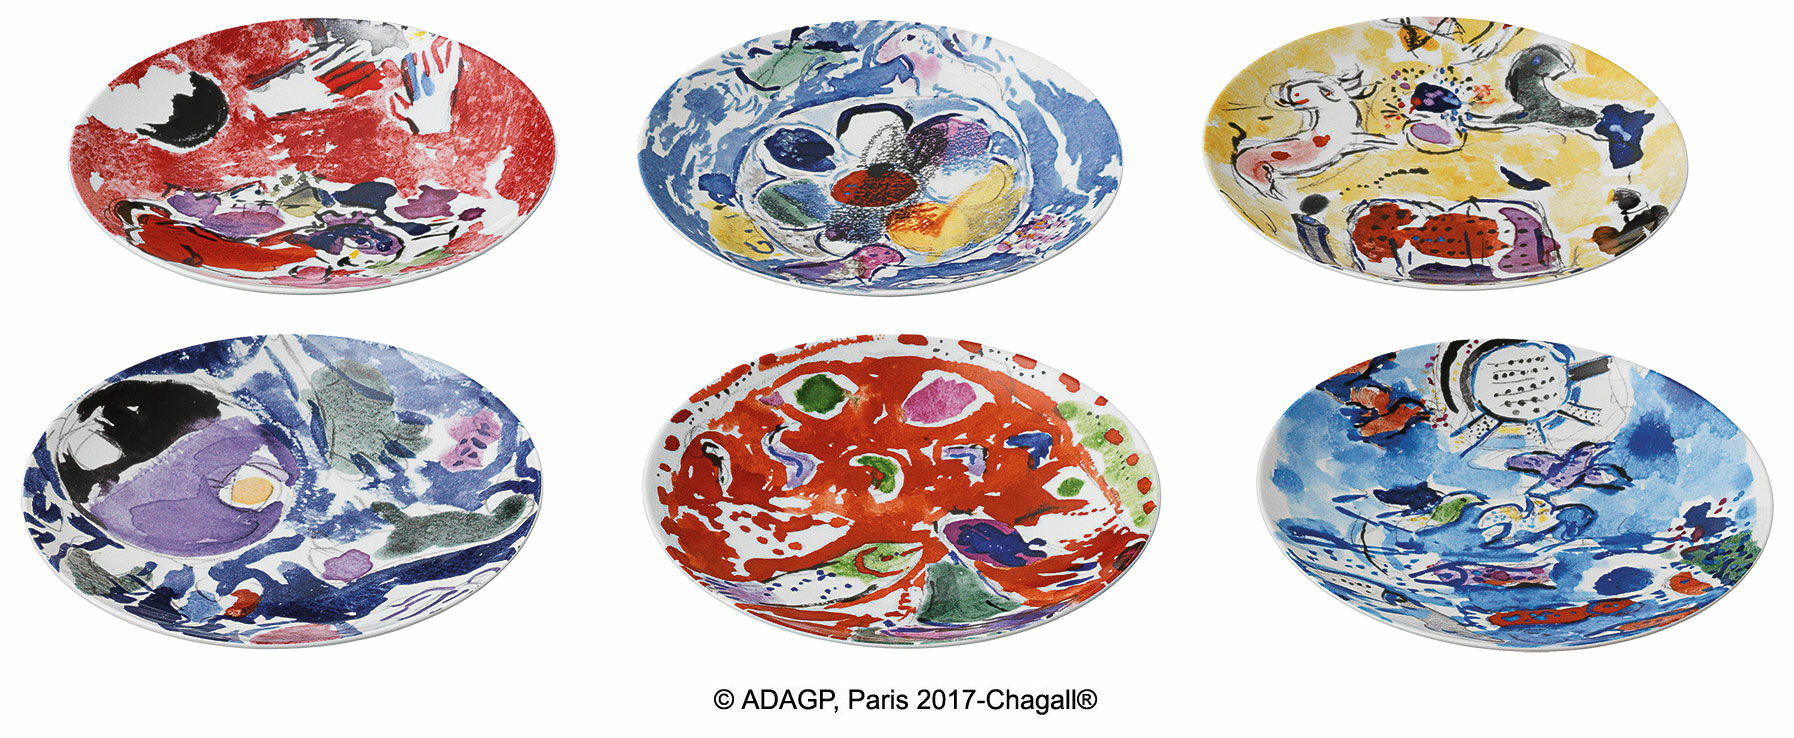 Les Vitraux d'Hadassah af Bernardaud - Sæt med 6 tallerkener med kunstnerens motiver, porcelæn von Marc Chagall